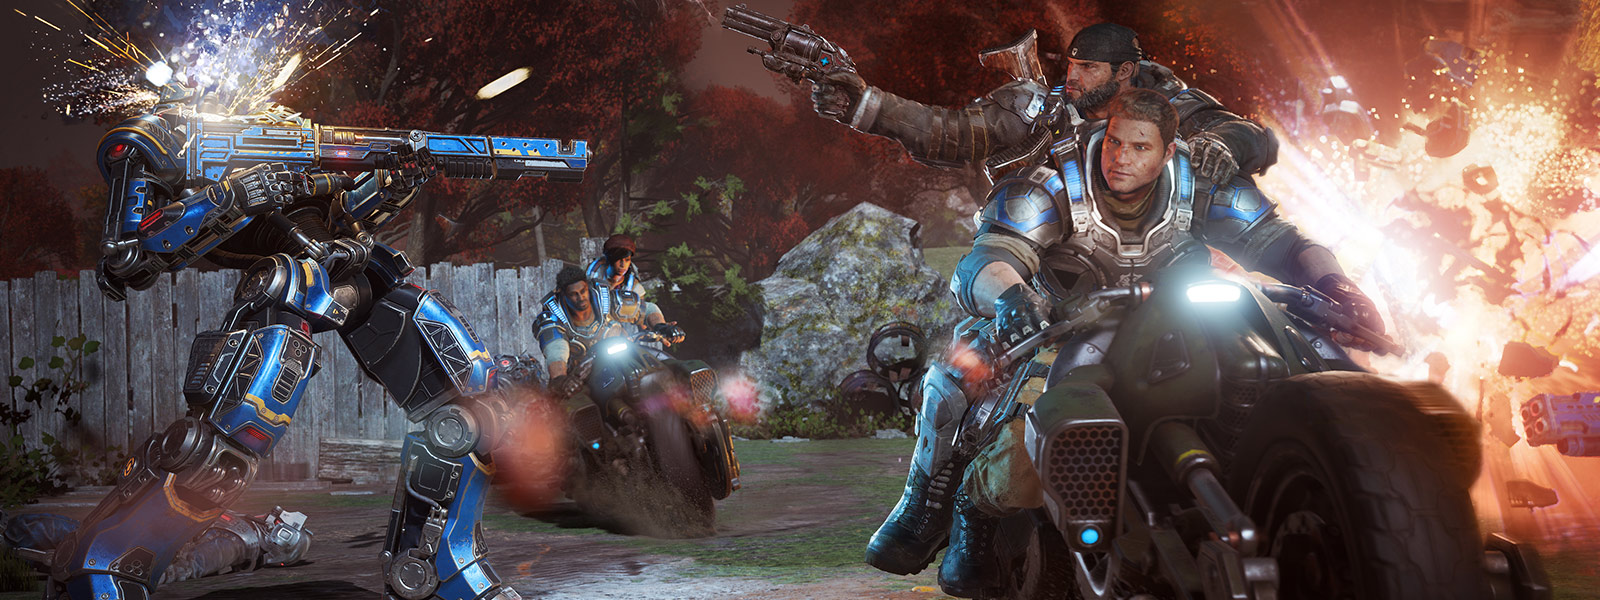 JD Fenix e seus amigos disparam armas e andam de motocicleta durante uma batalha do jogo Gears of War 4